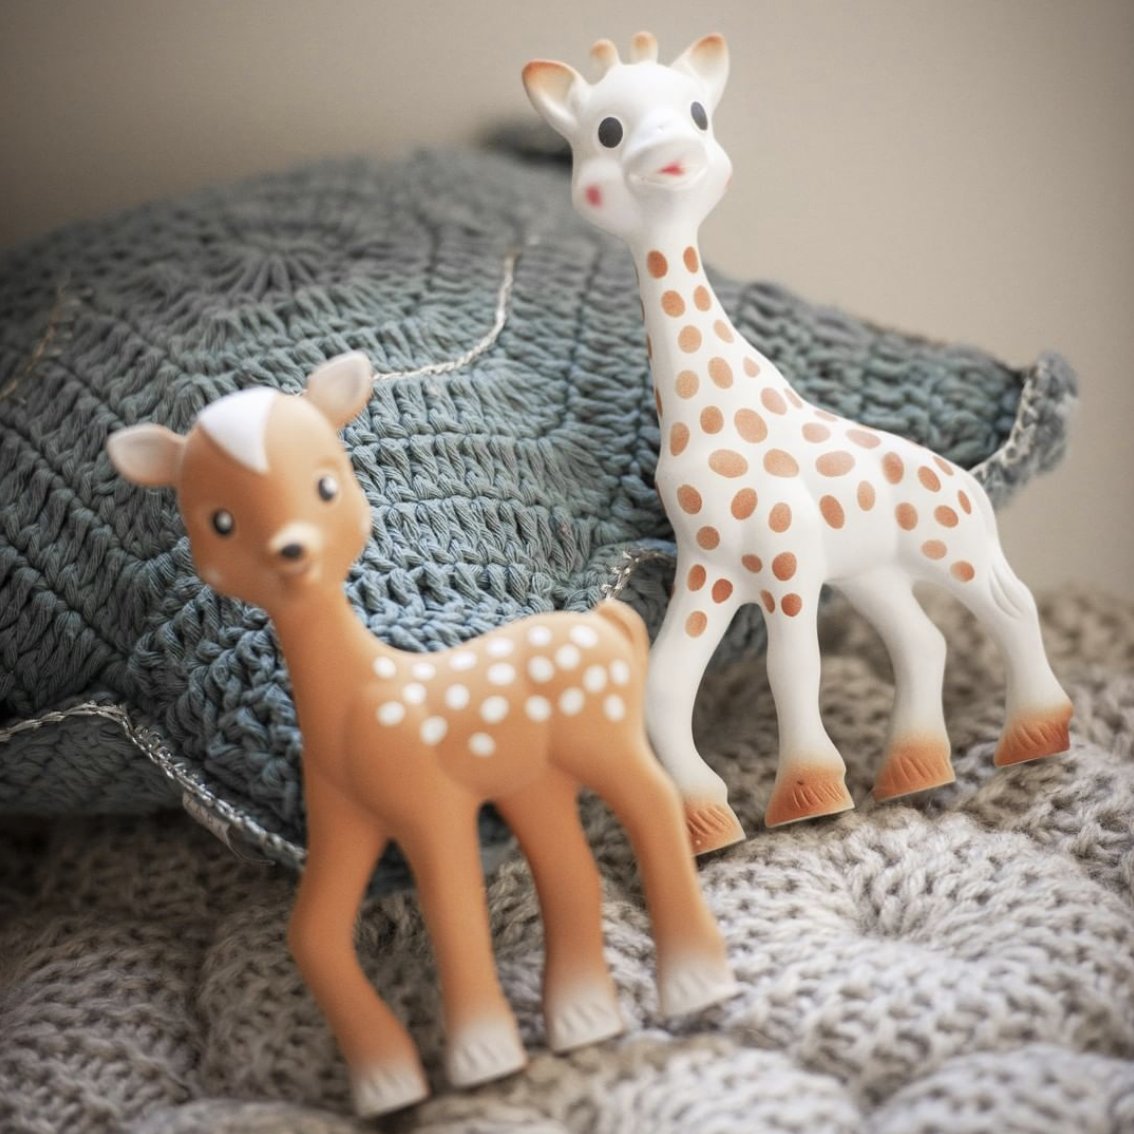 Vente en ligne pour bébé  Sophie la girafe à la Réunion